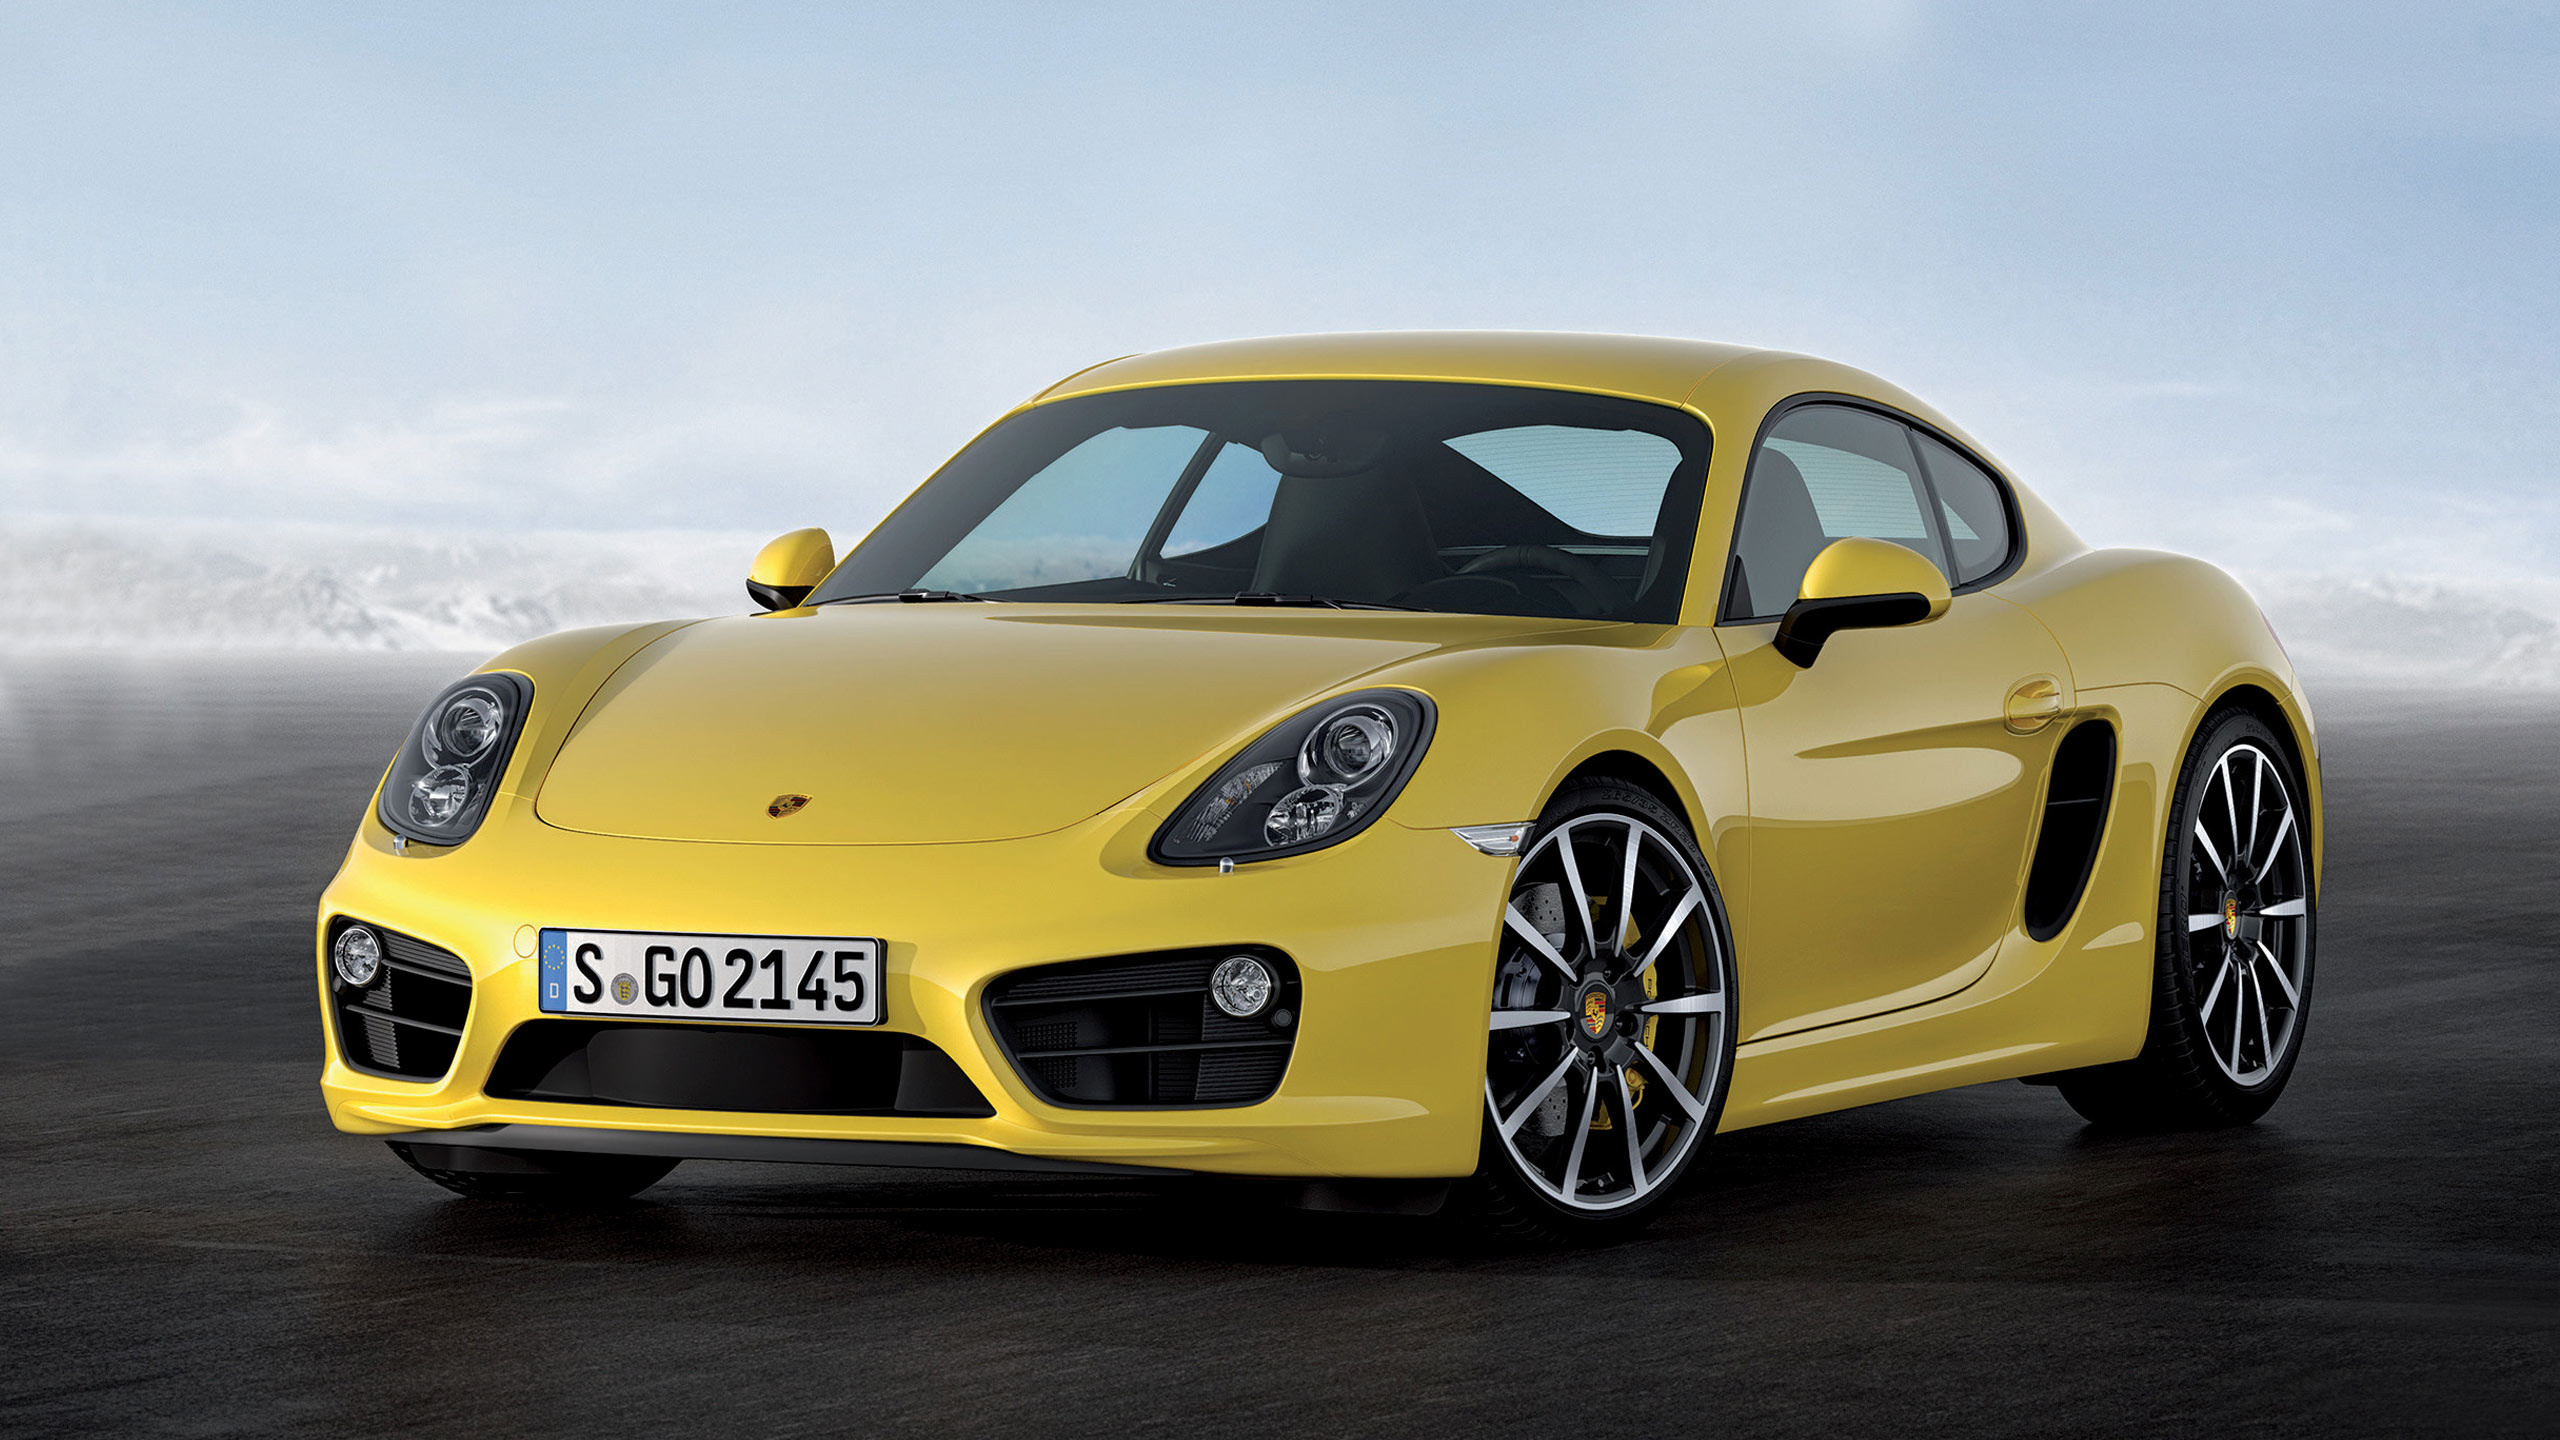 Gelber Porsche 911 Auf Weißem Hintergrund. Wallpaper in 2560x1440 Resolution